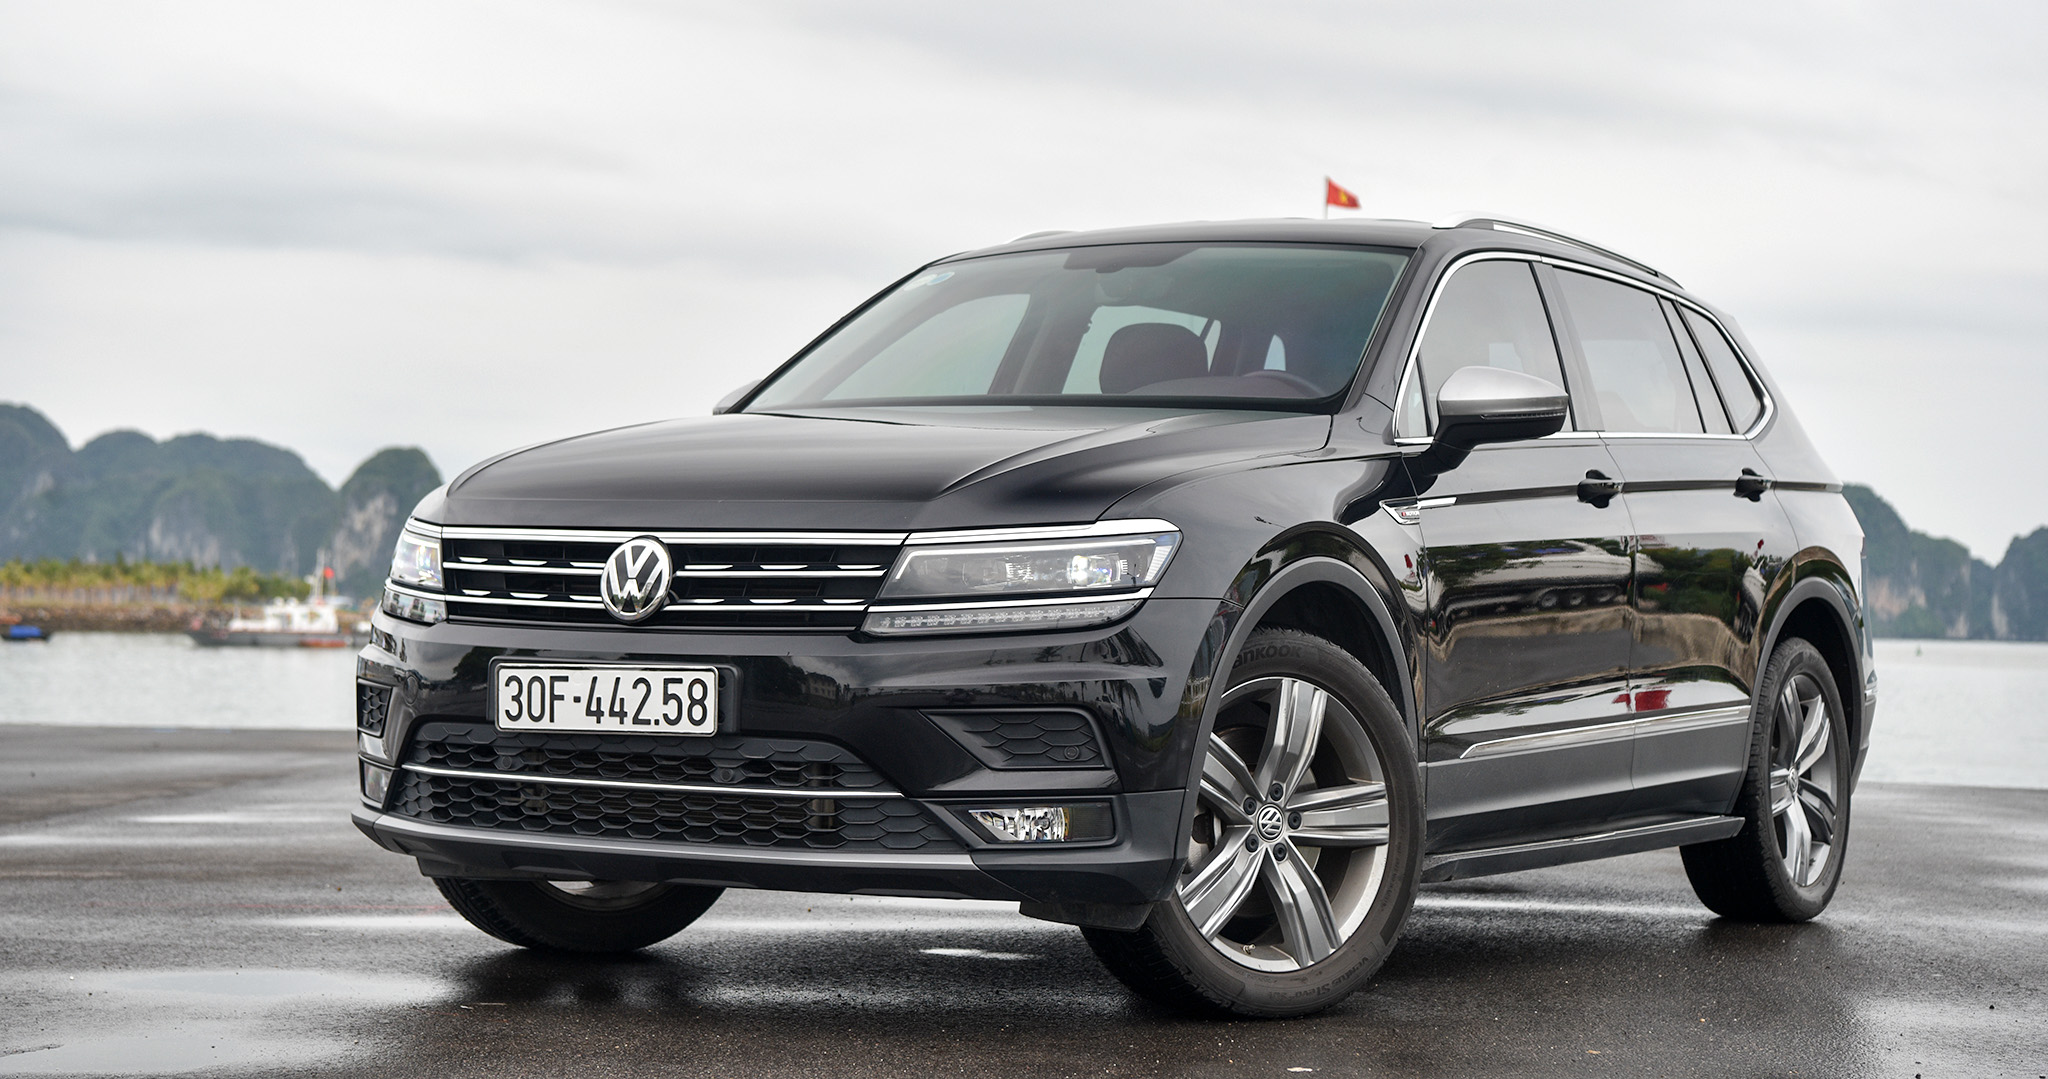 Bảng giá xe Volkswagen tháng 6/2020: Ưu đãi khủng hơn 200 triệu đồng